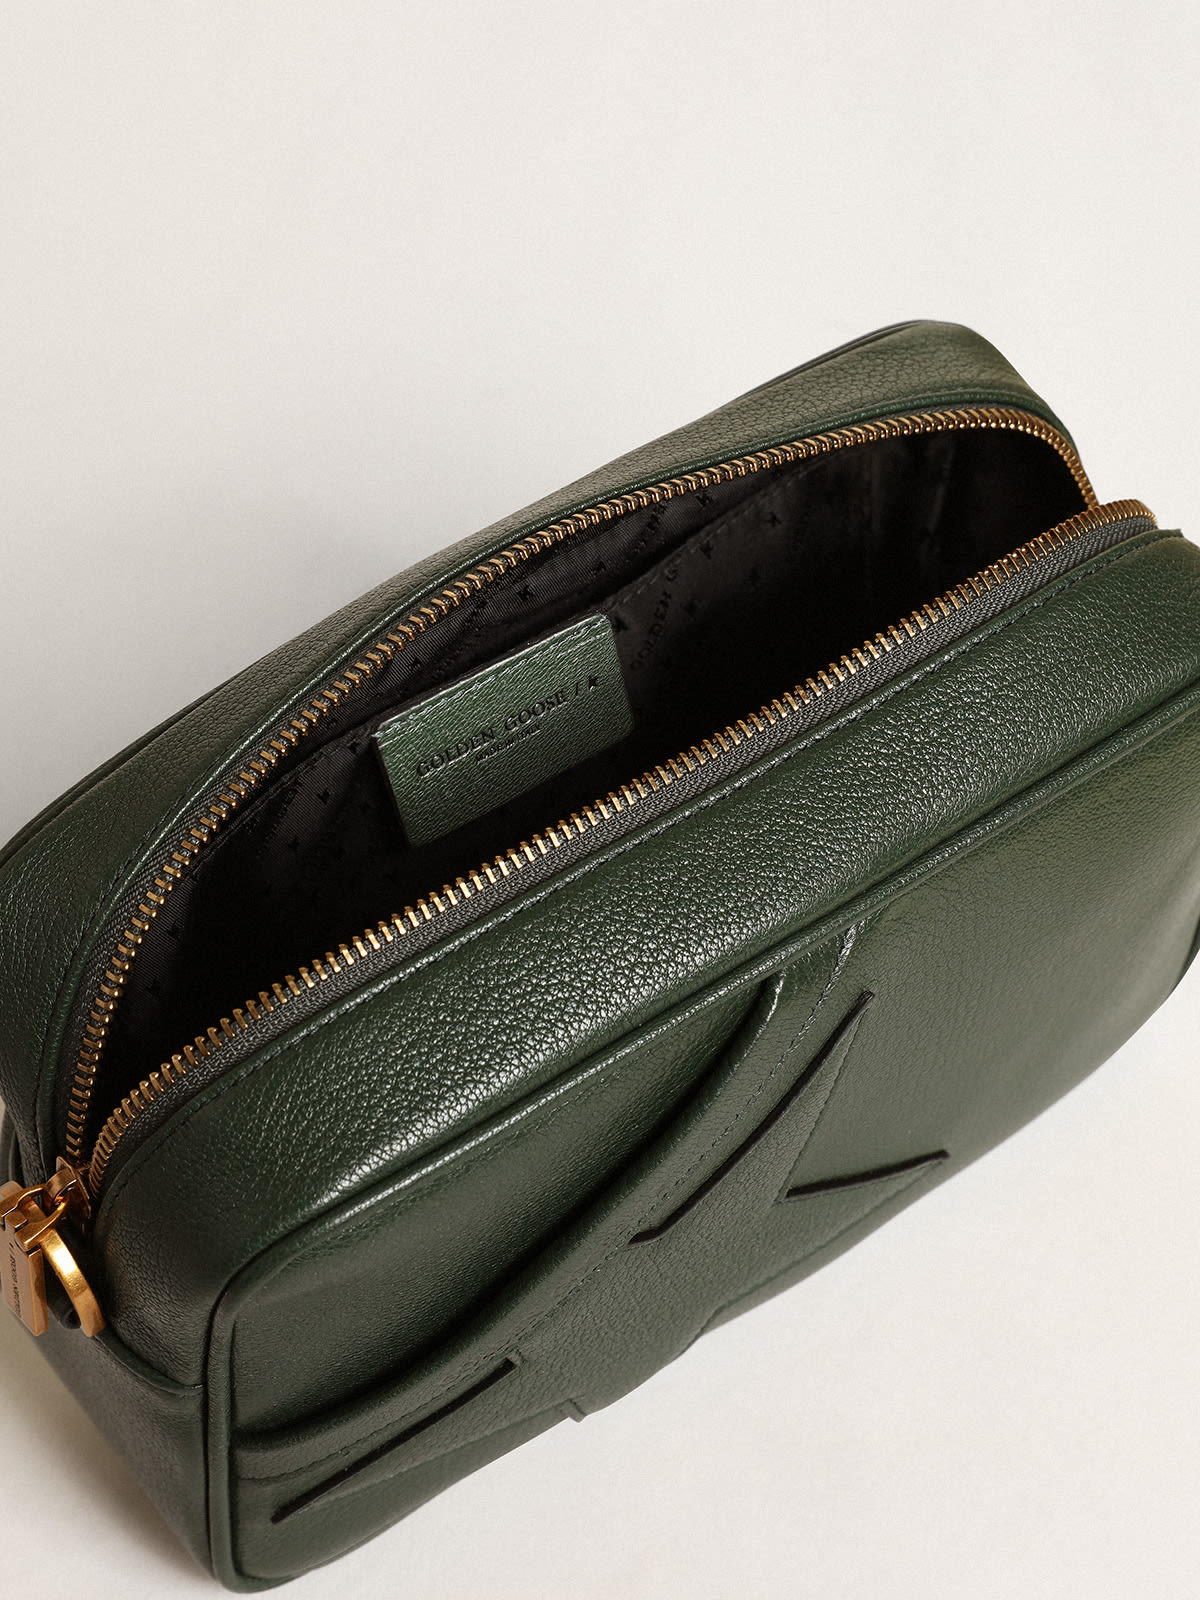 Golden Goose - Bolso Star Bag de piel color verde oscuro con estrella tono sobre tono in 